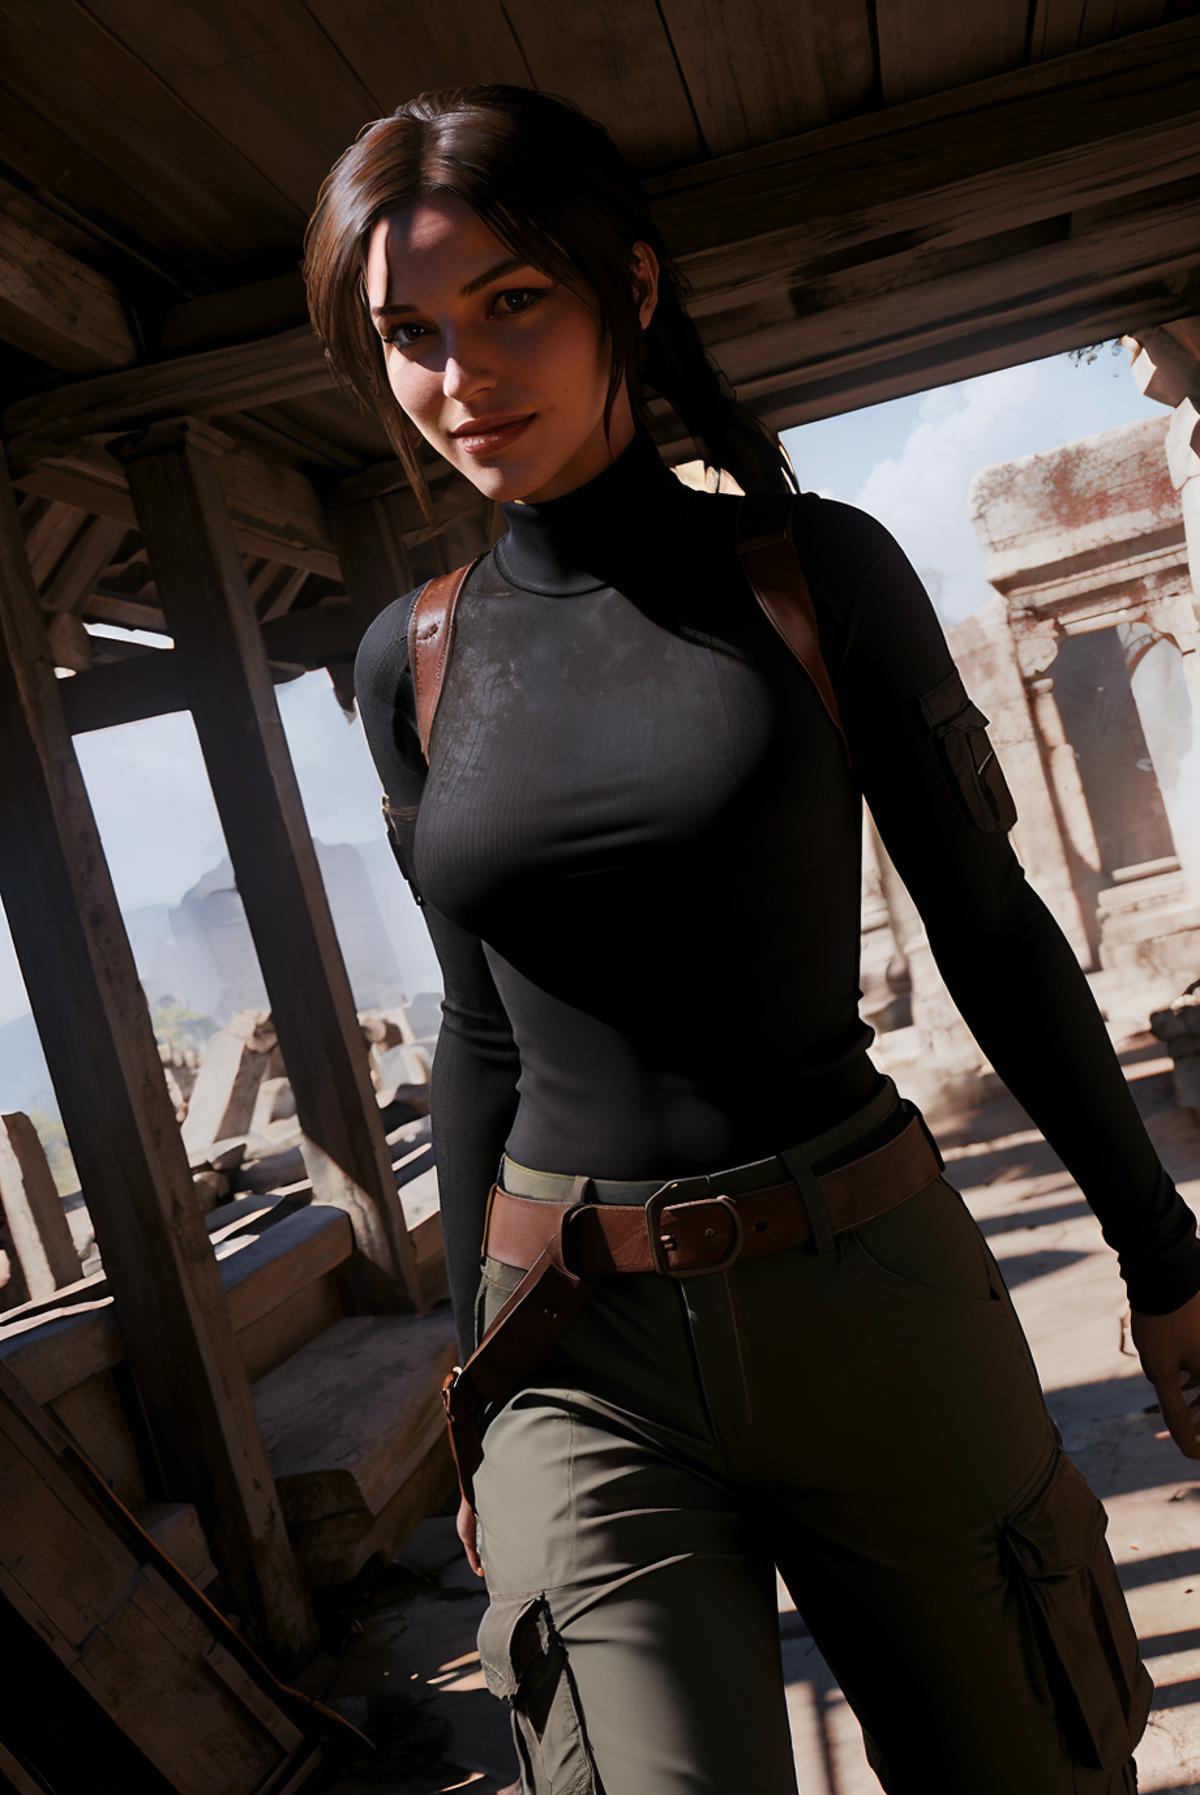 Lara Croft - Rise of the Tomb Raider image by wikkitikki